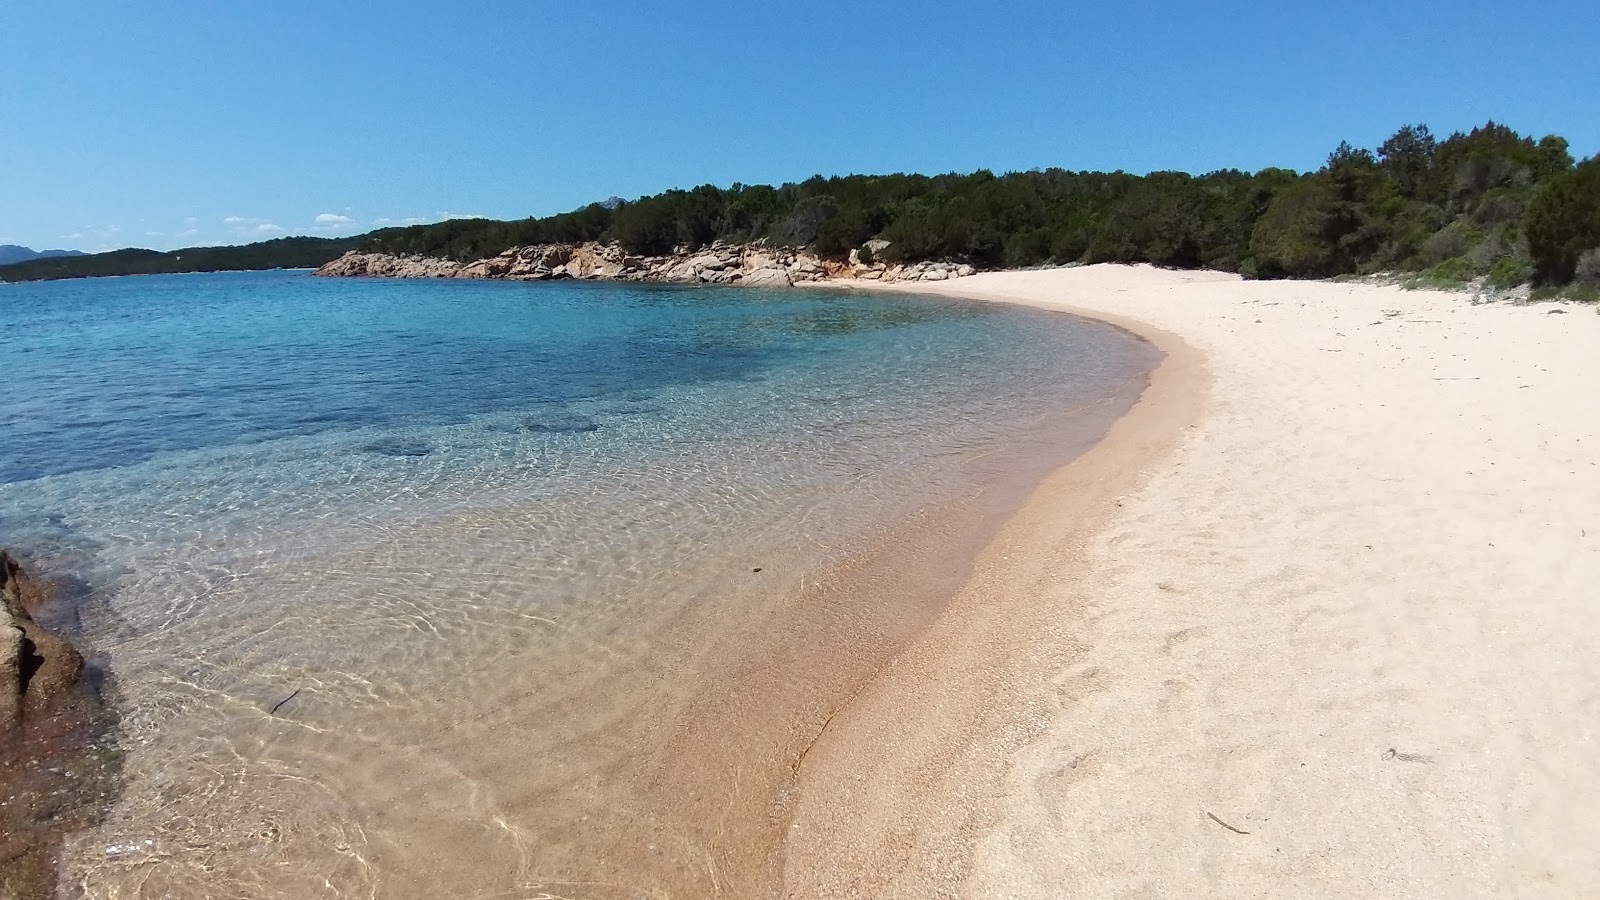 Fotografie cu Plaja Piccola Lisciaruja cu o suprafață de nisip strălucitor